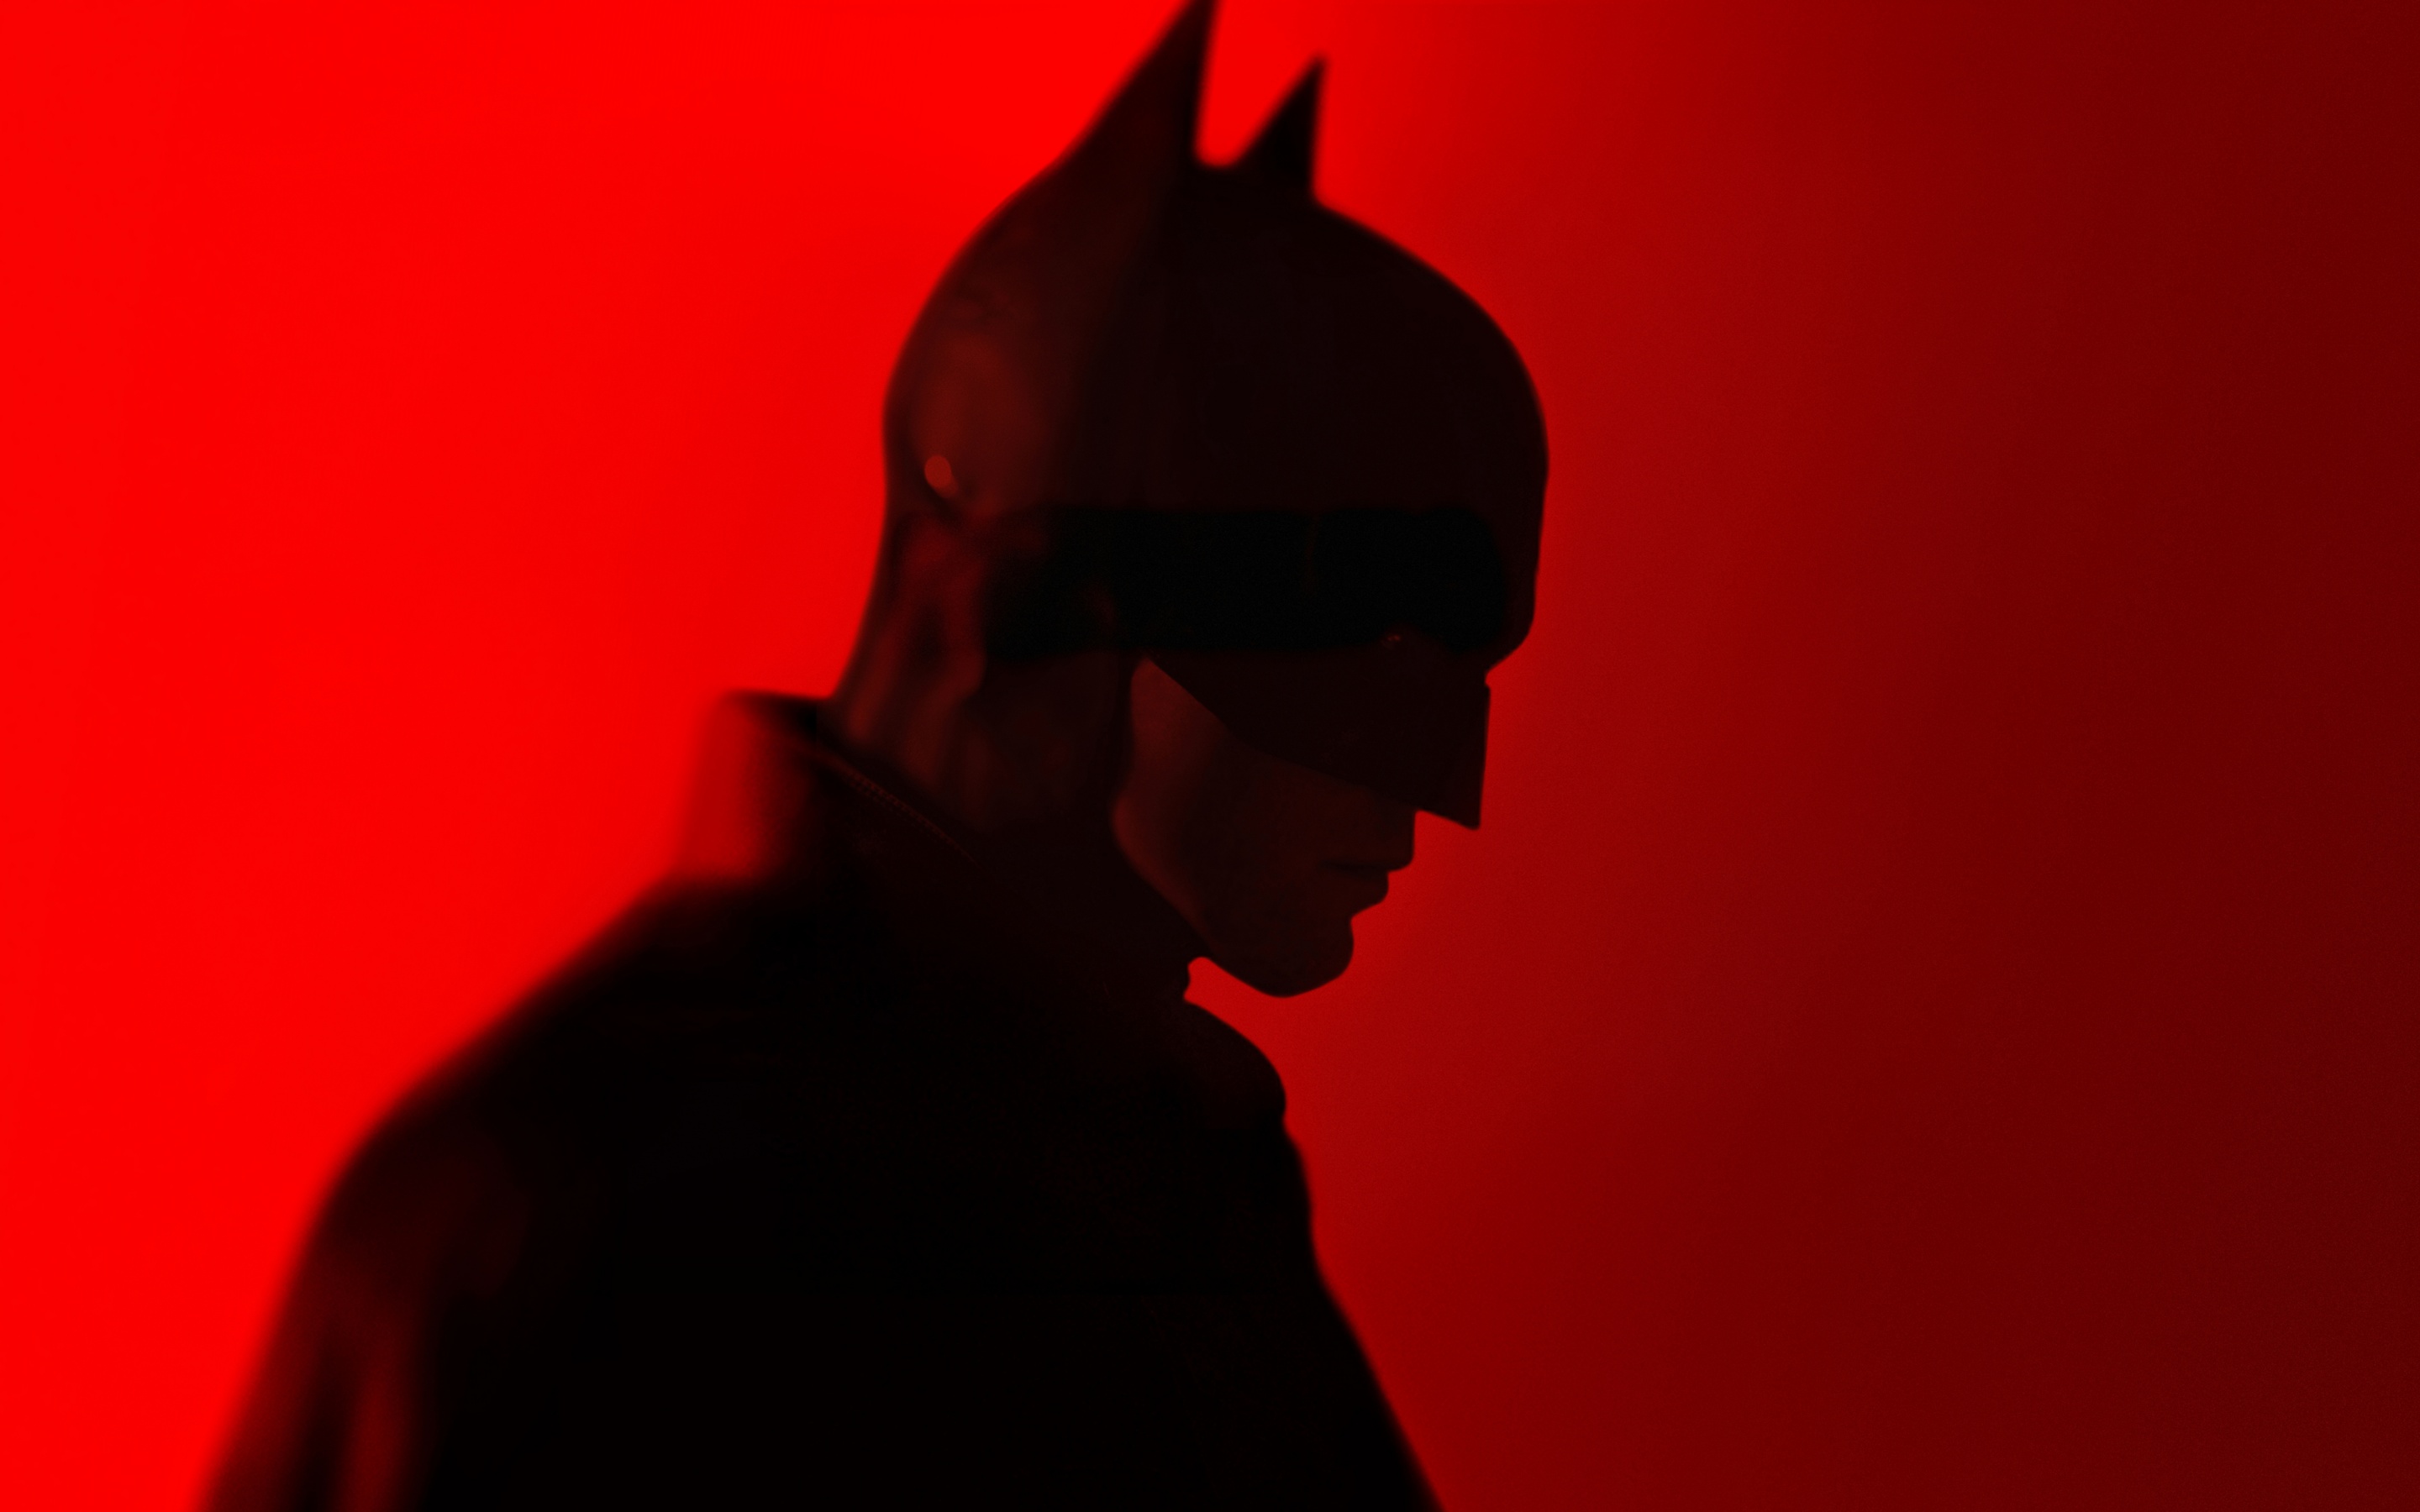 The Batman (2022) Wallpaper in 8K UHD